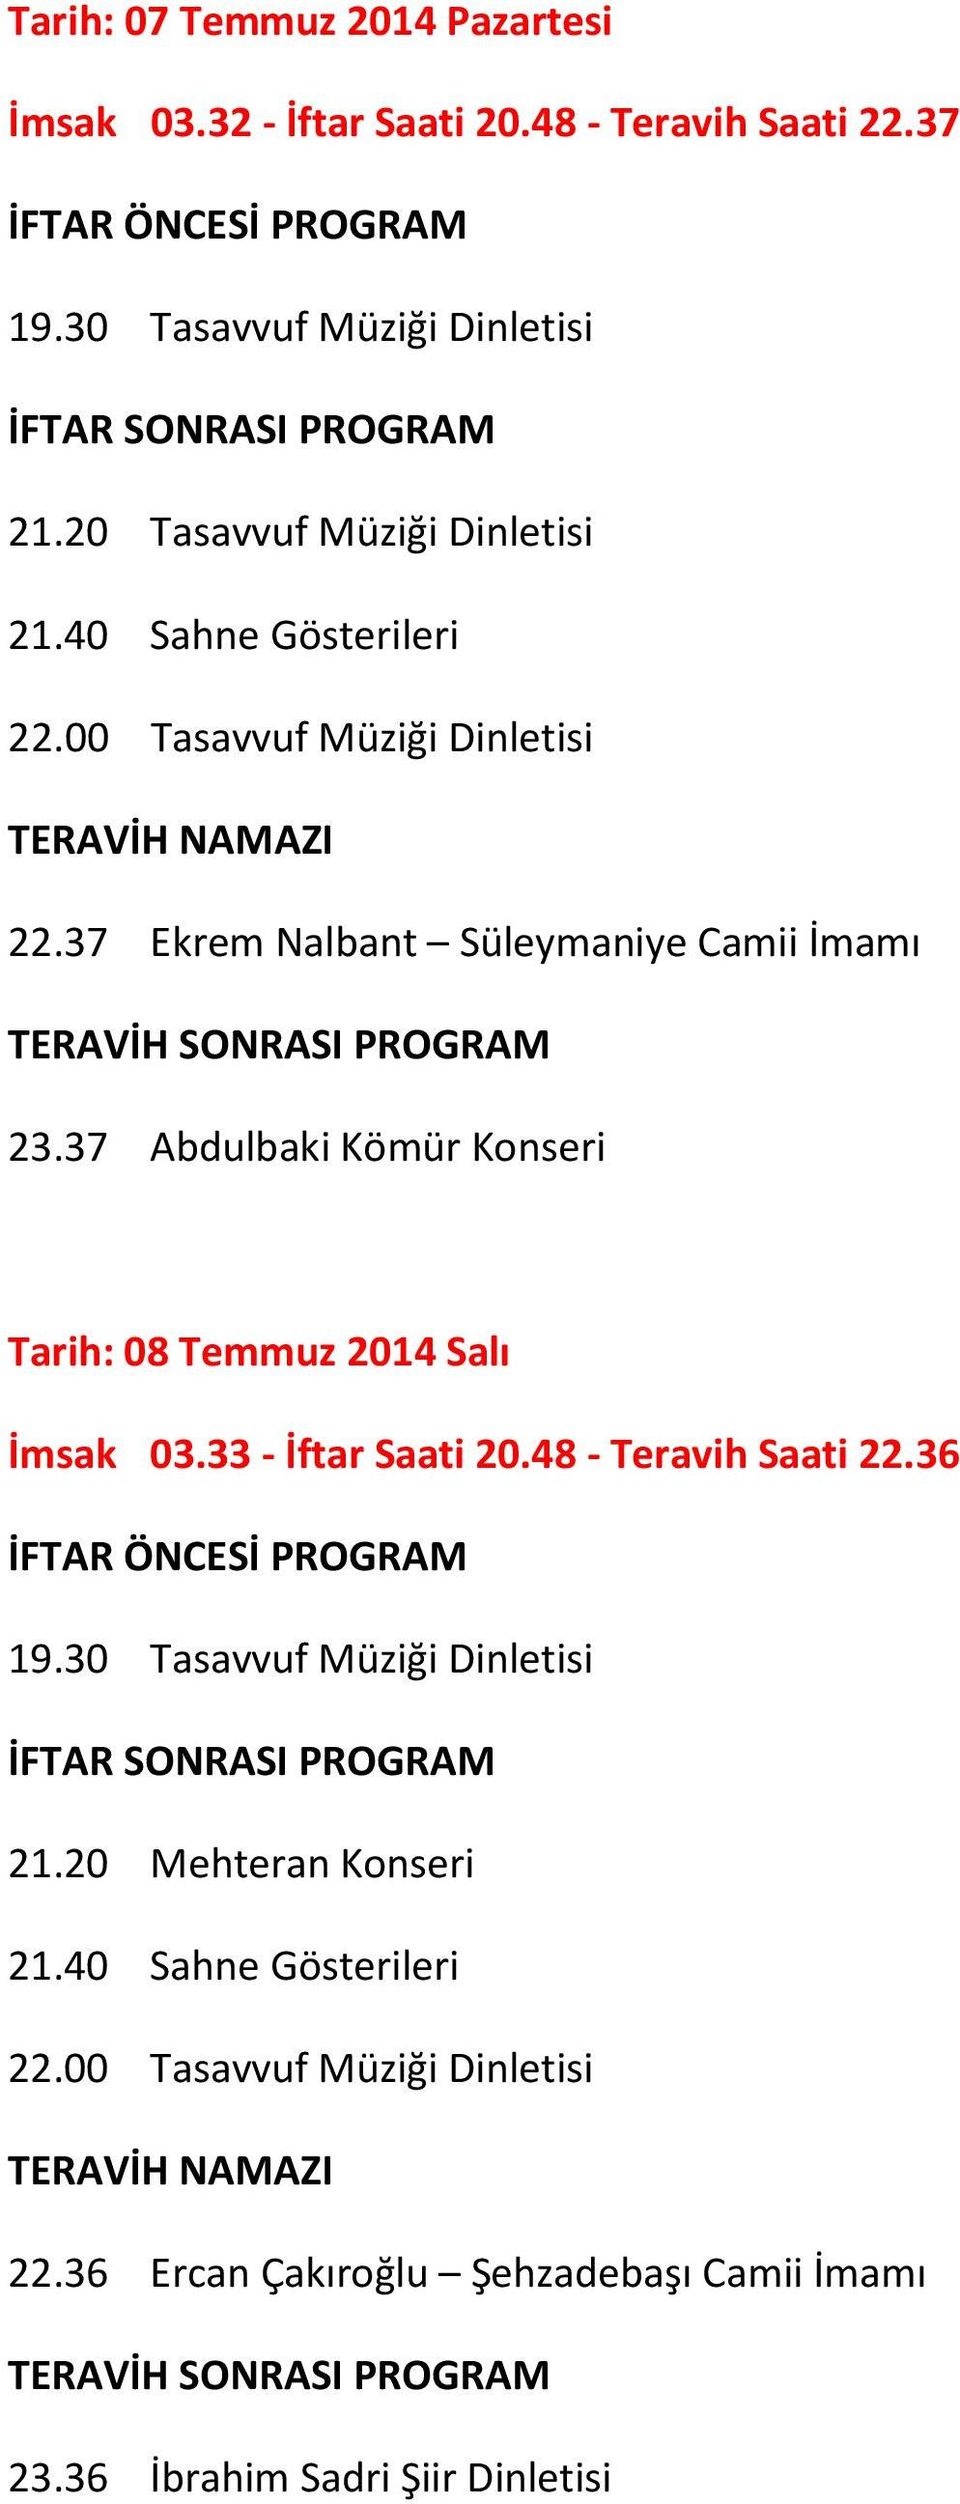 37 Abdulbaki Kömür Konseri Tarih: 08 Temmuz 2014 Salı İmsak 03.33 - İftar Saati 20.48 - Teravih Saati 22.36 19.